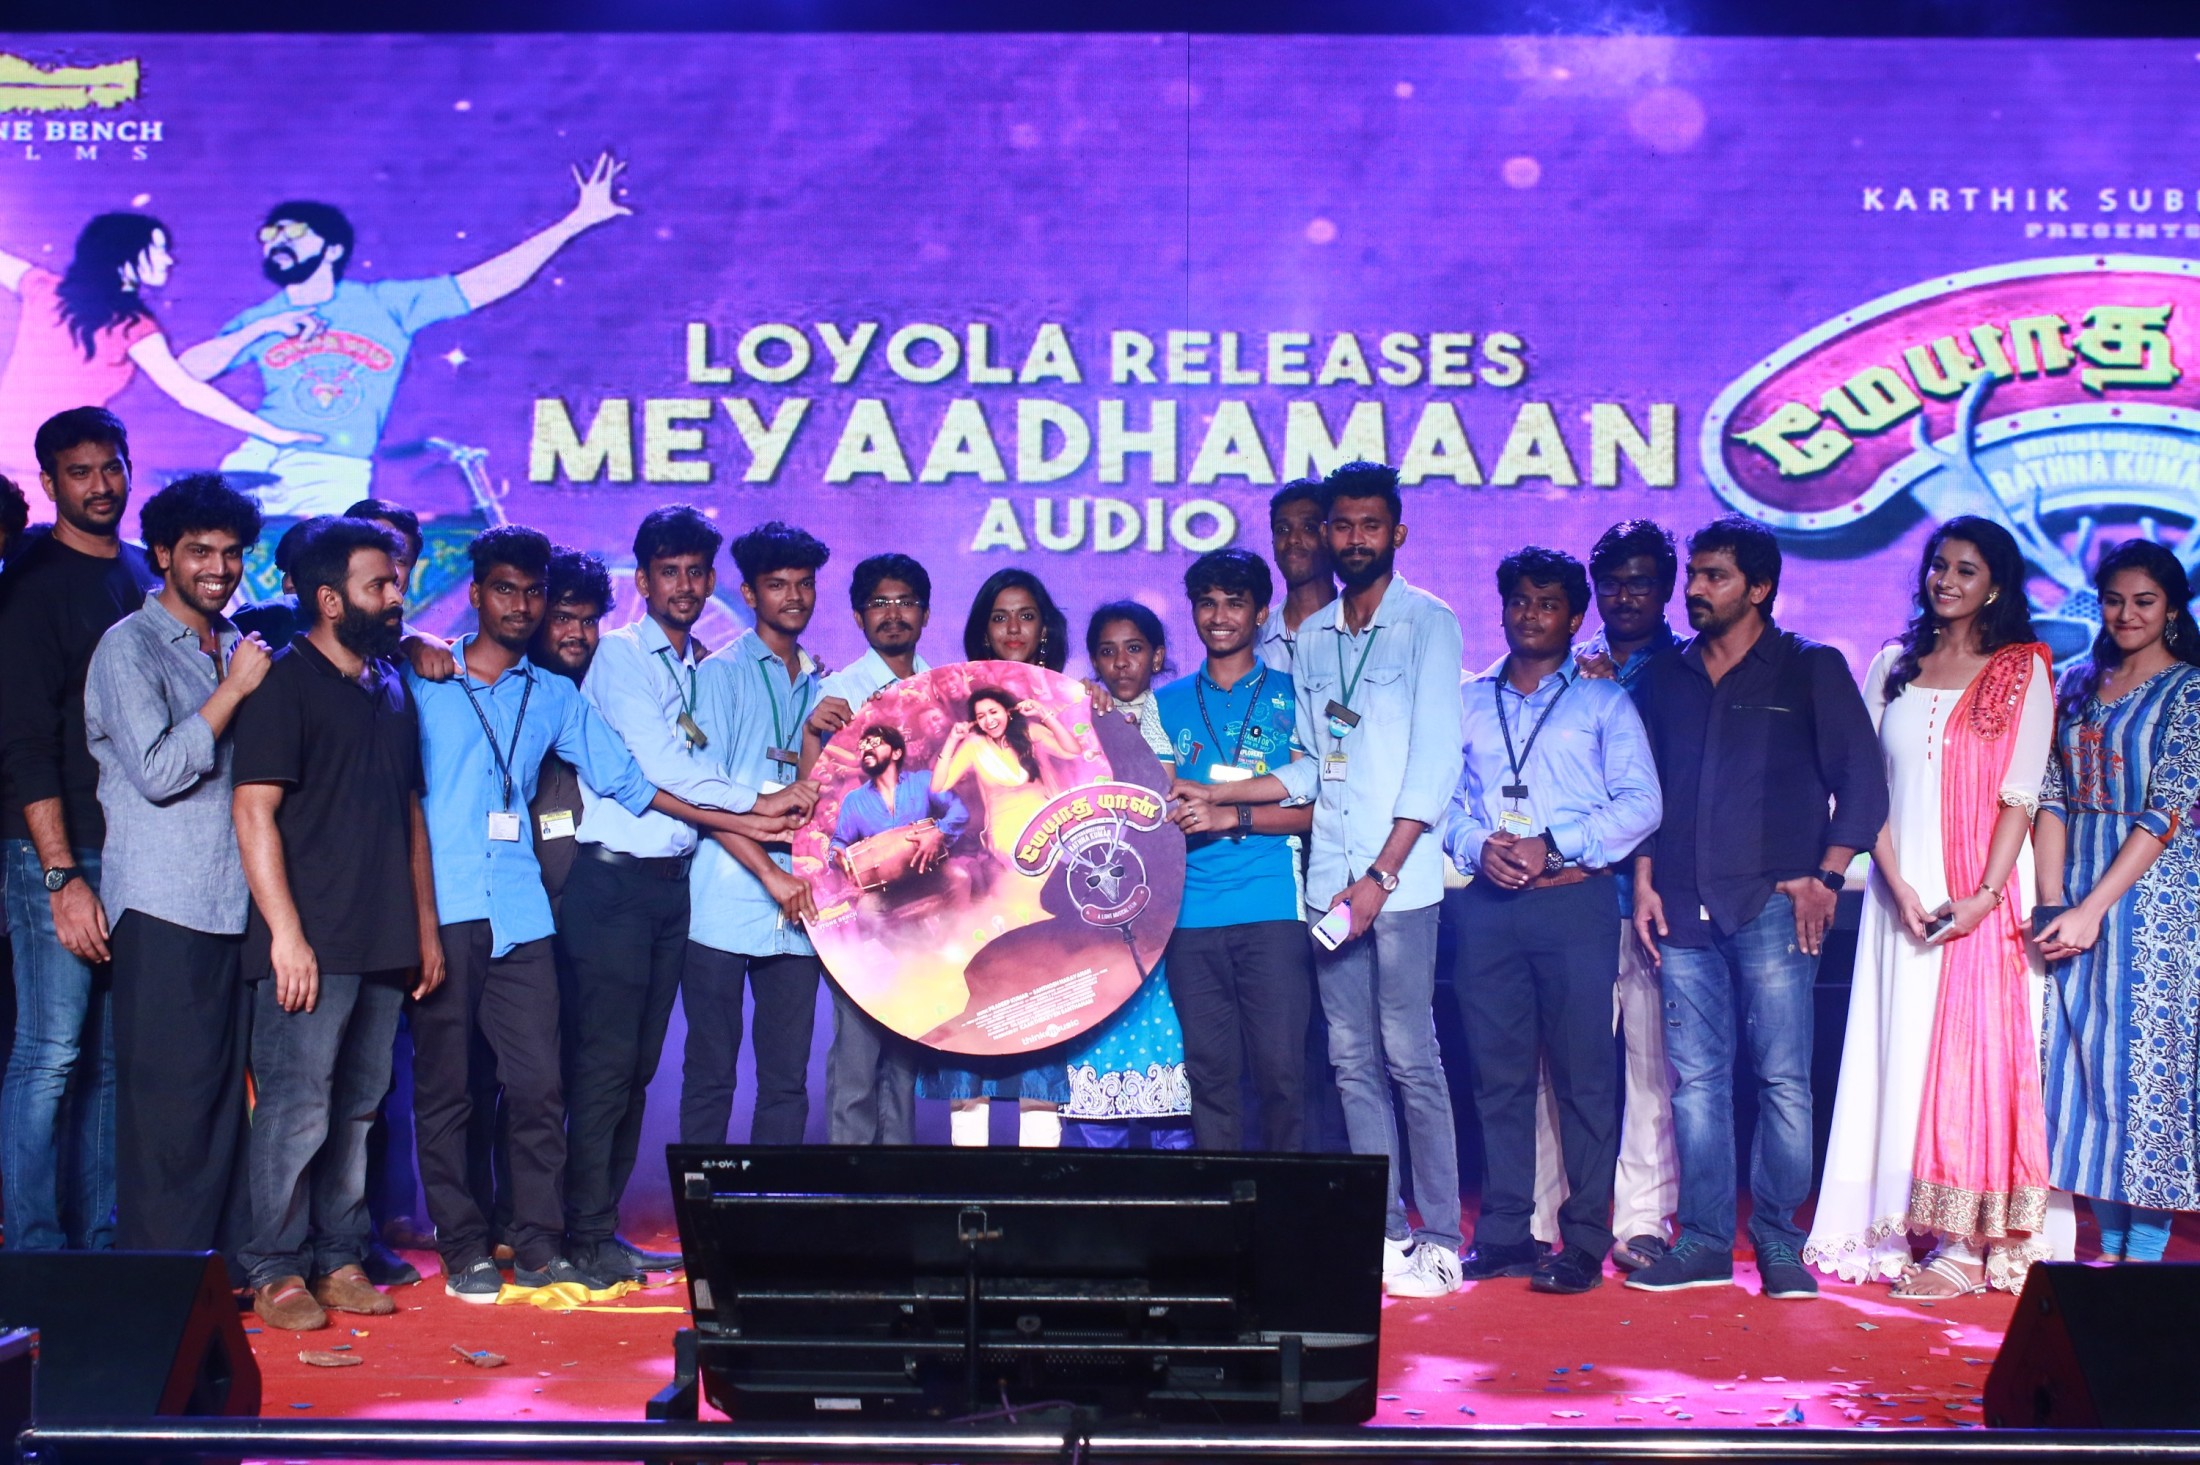 Meyaadha Maan Audio Release at Loyola College Photos